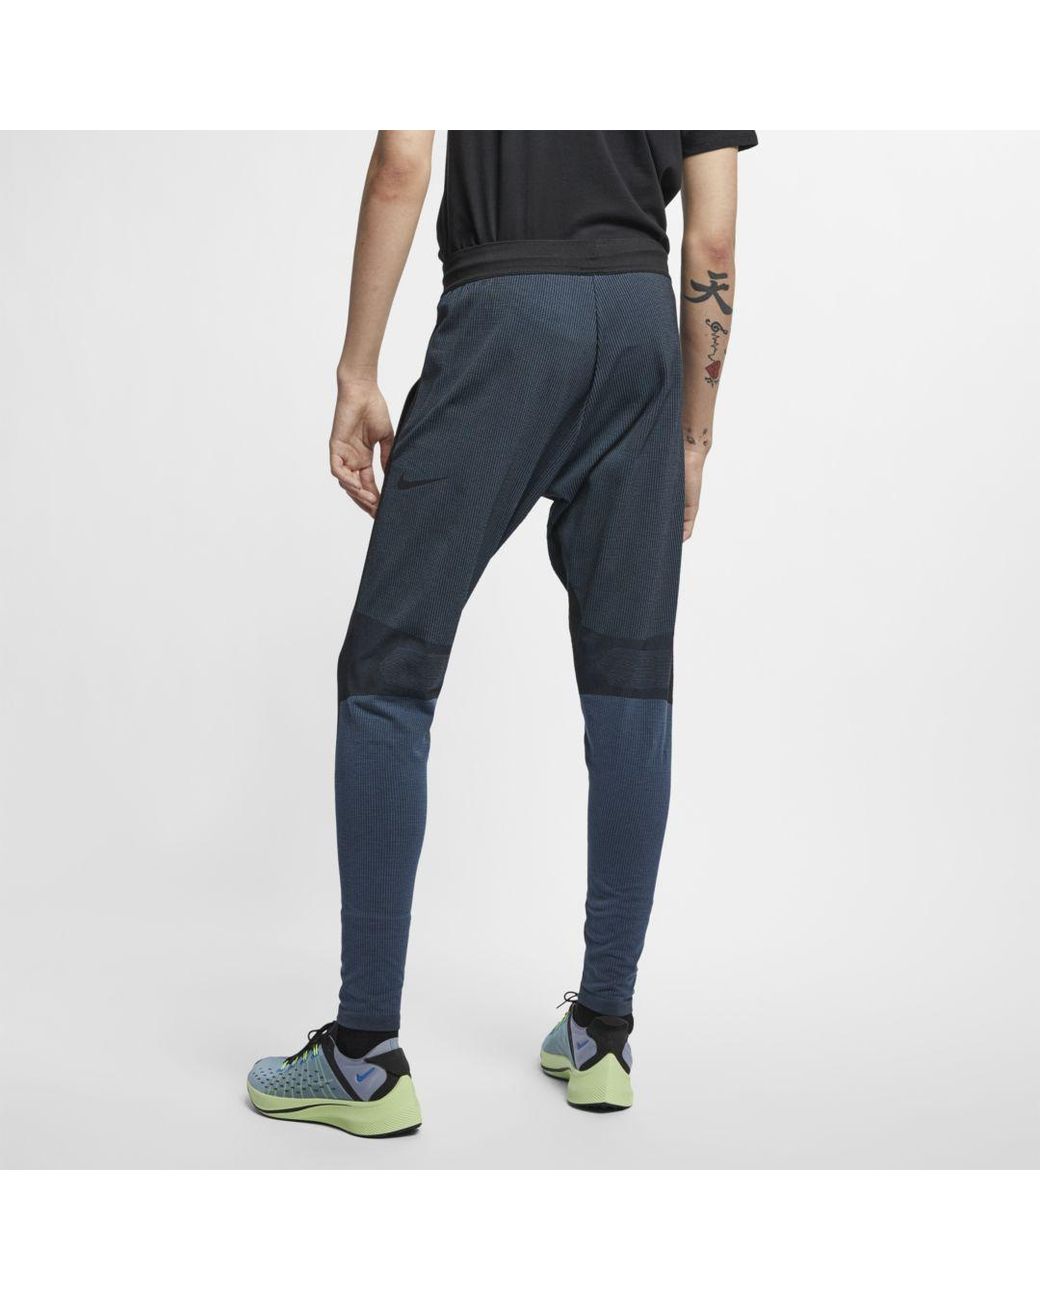 Nike Men's Black Sportswear Tech Pack Knit Pants